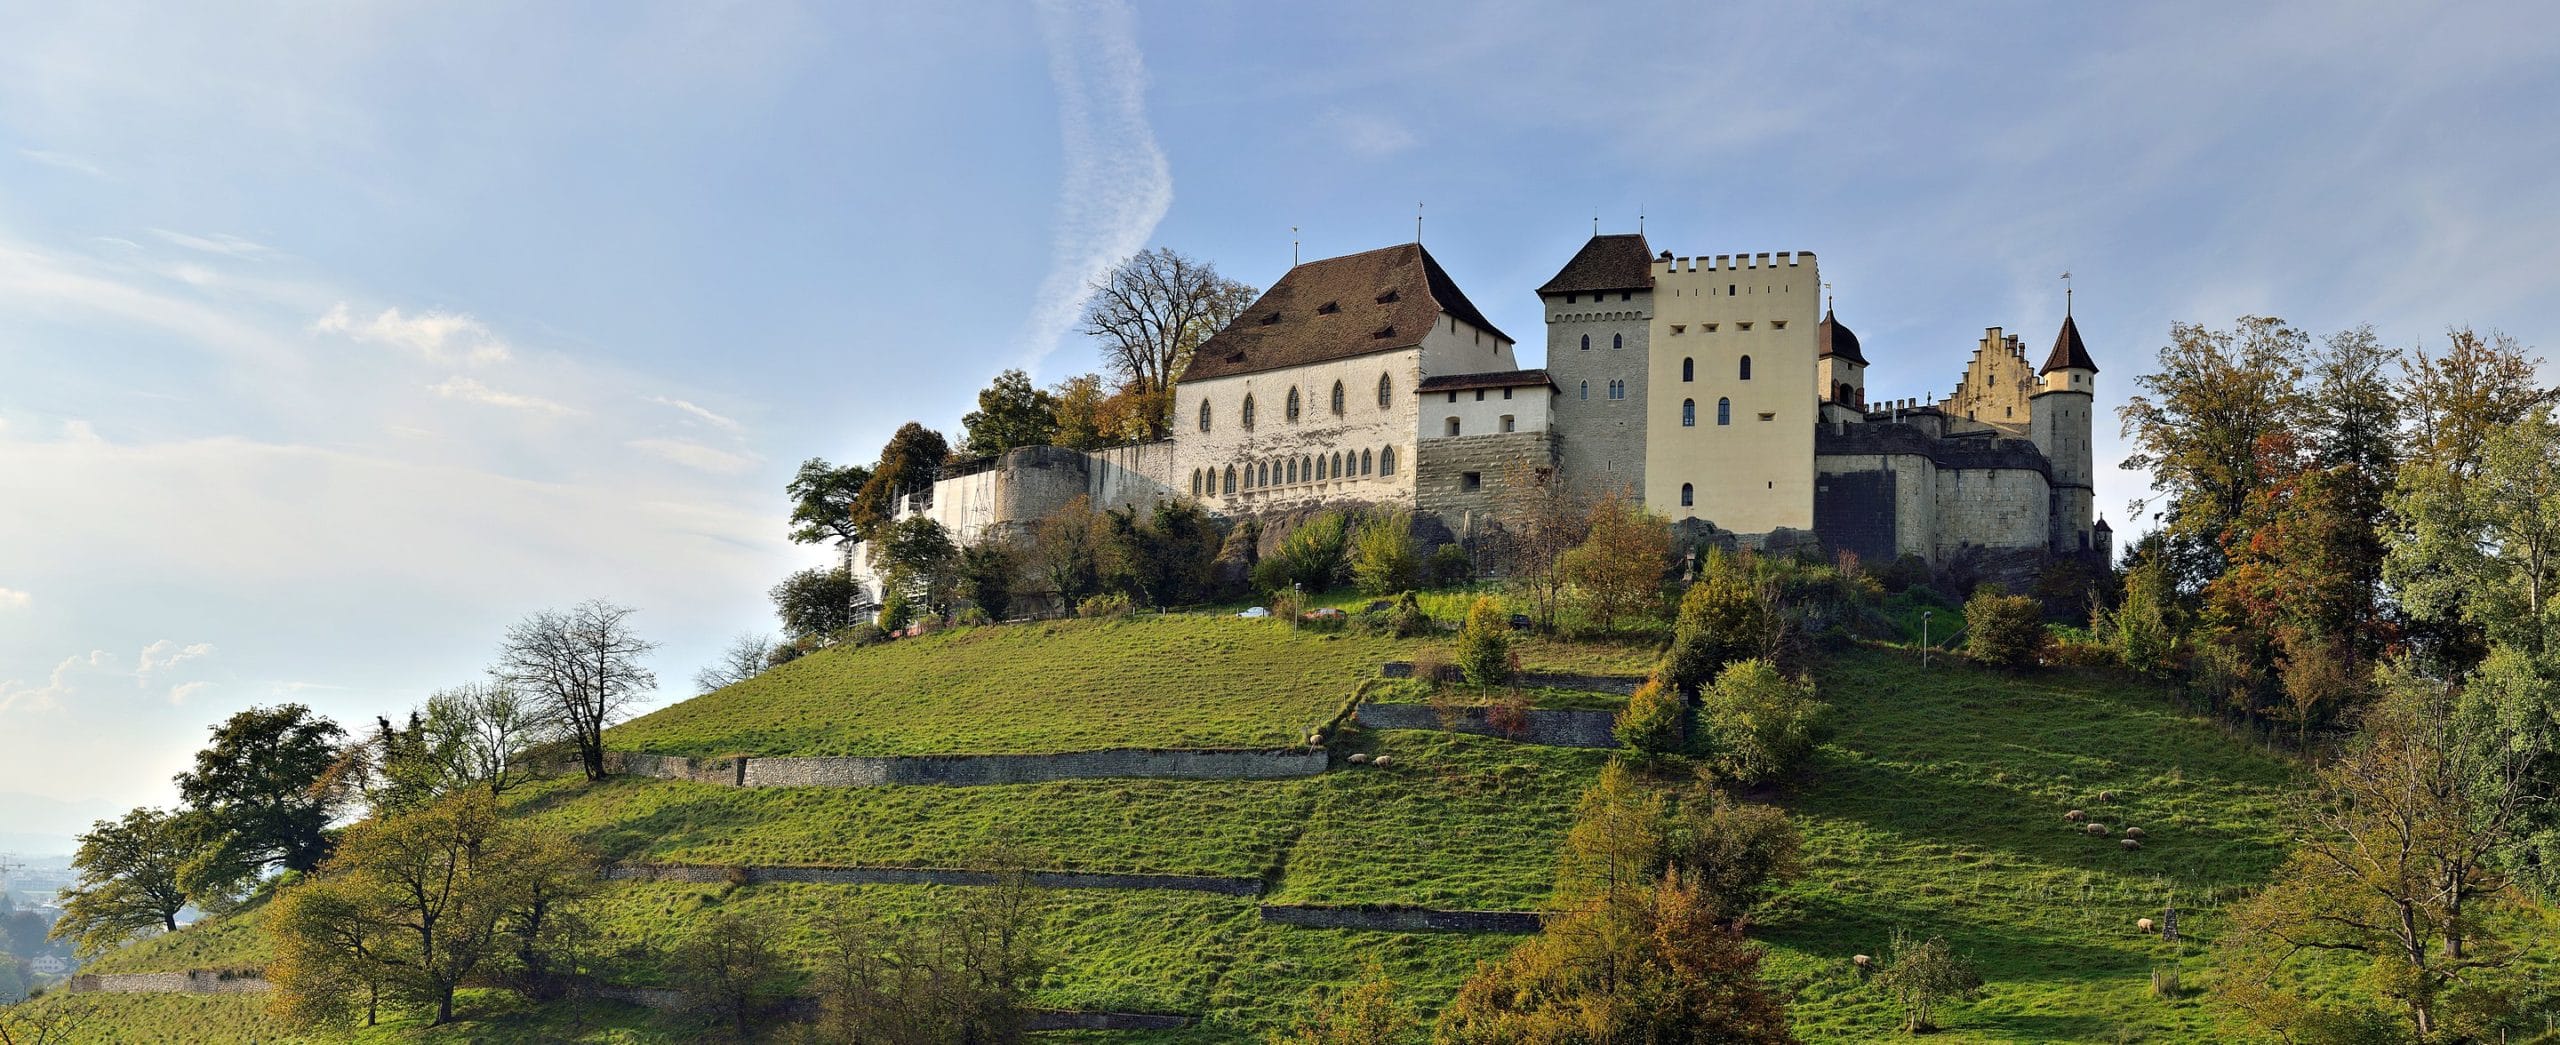 Первоначального замок графов Ленцбурга, построен до 1036 года. Сейчас часть Исторического музея Аргау. Вид с юго-востока. 2014 г. (© Wladyslaw Sojka)